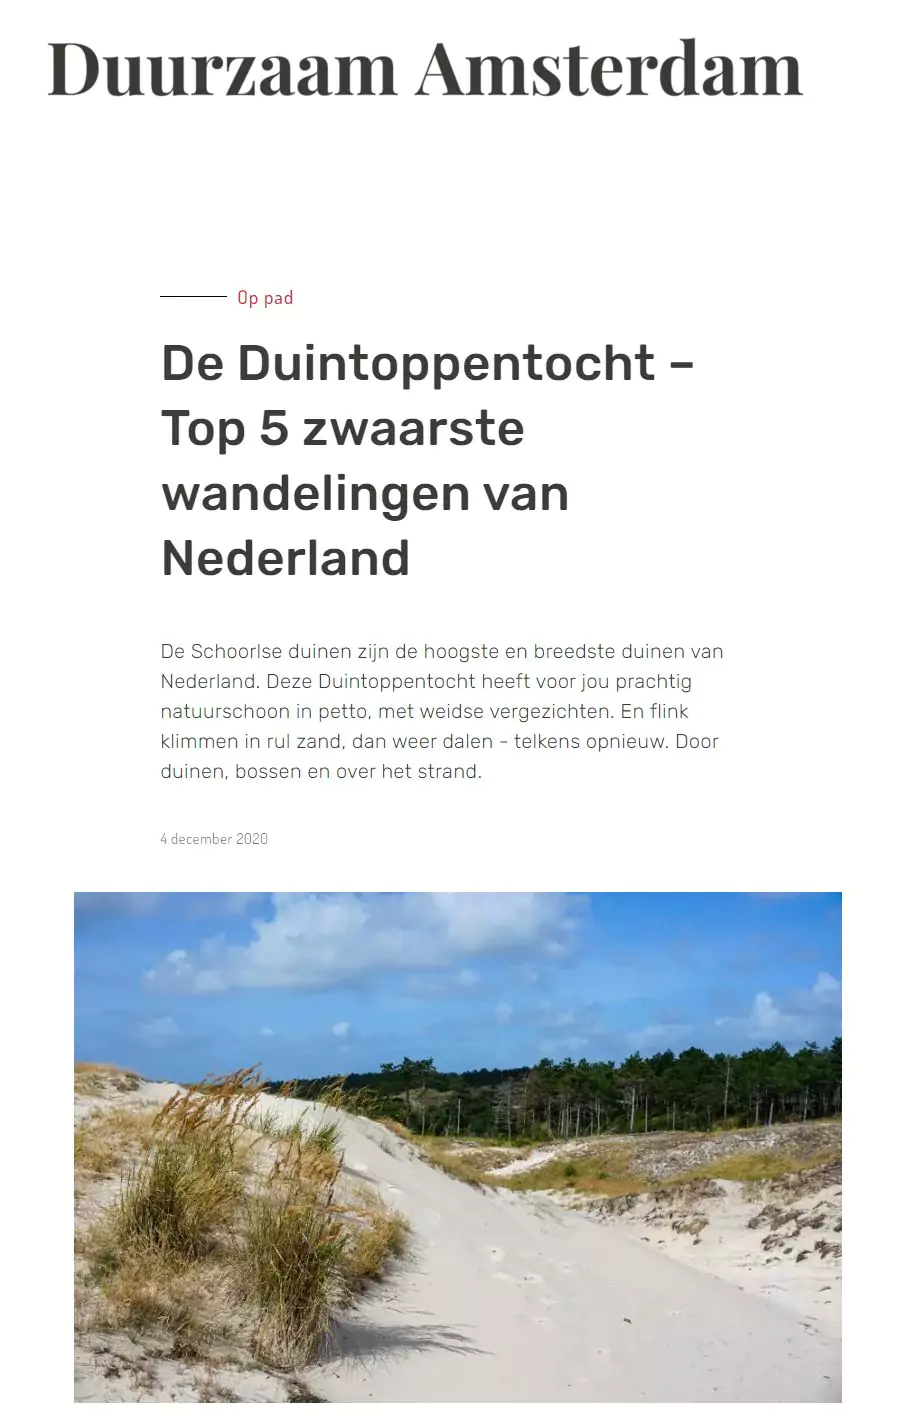 De Duintoppentocht - top 5 zwaarste wandelingen van Nederland